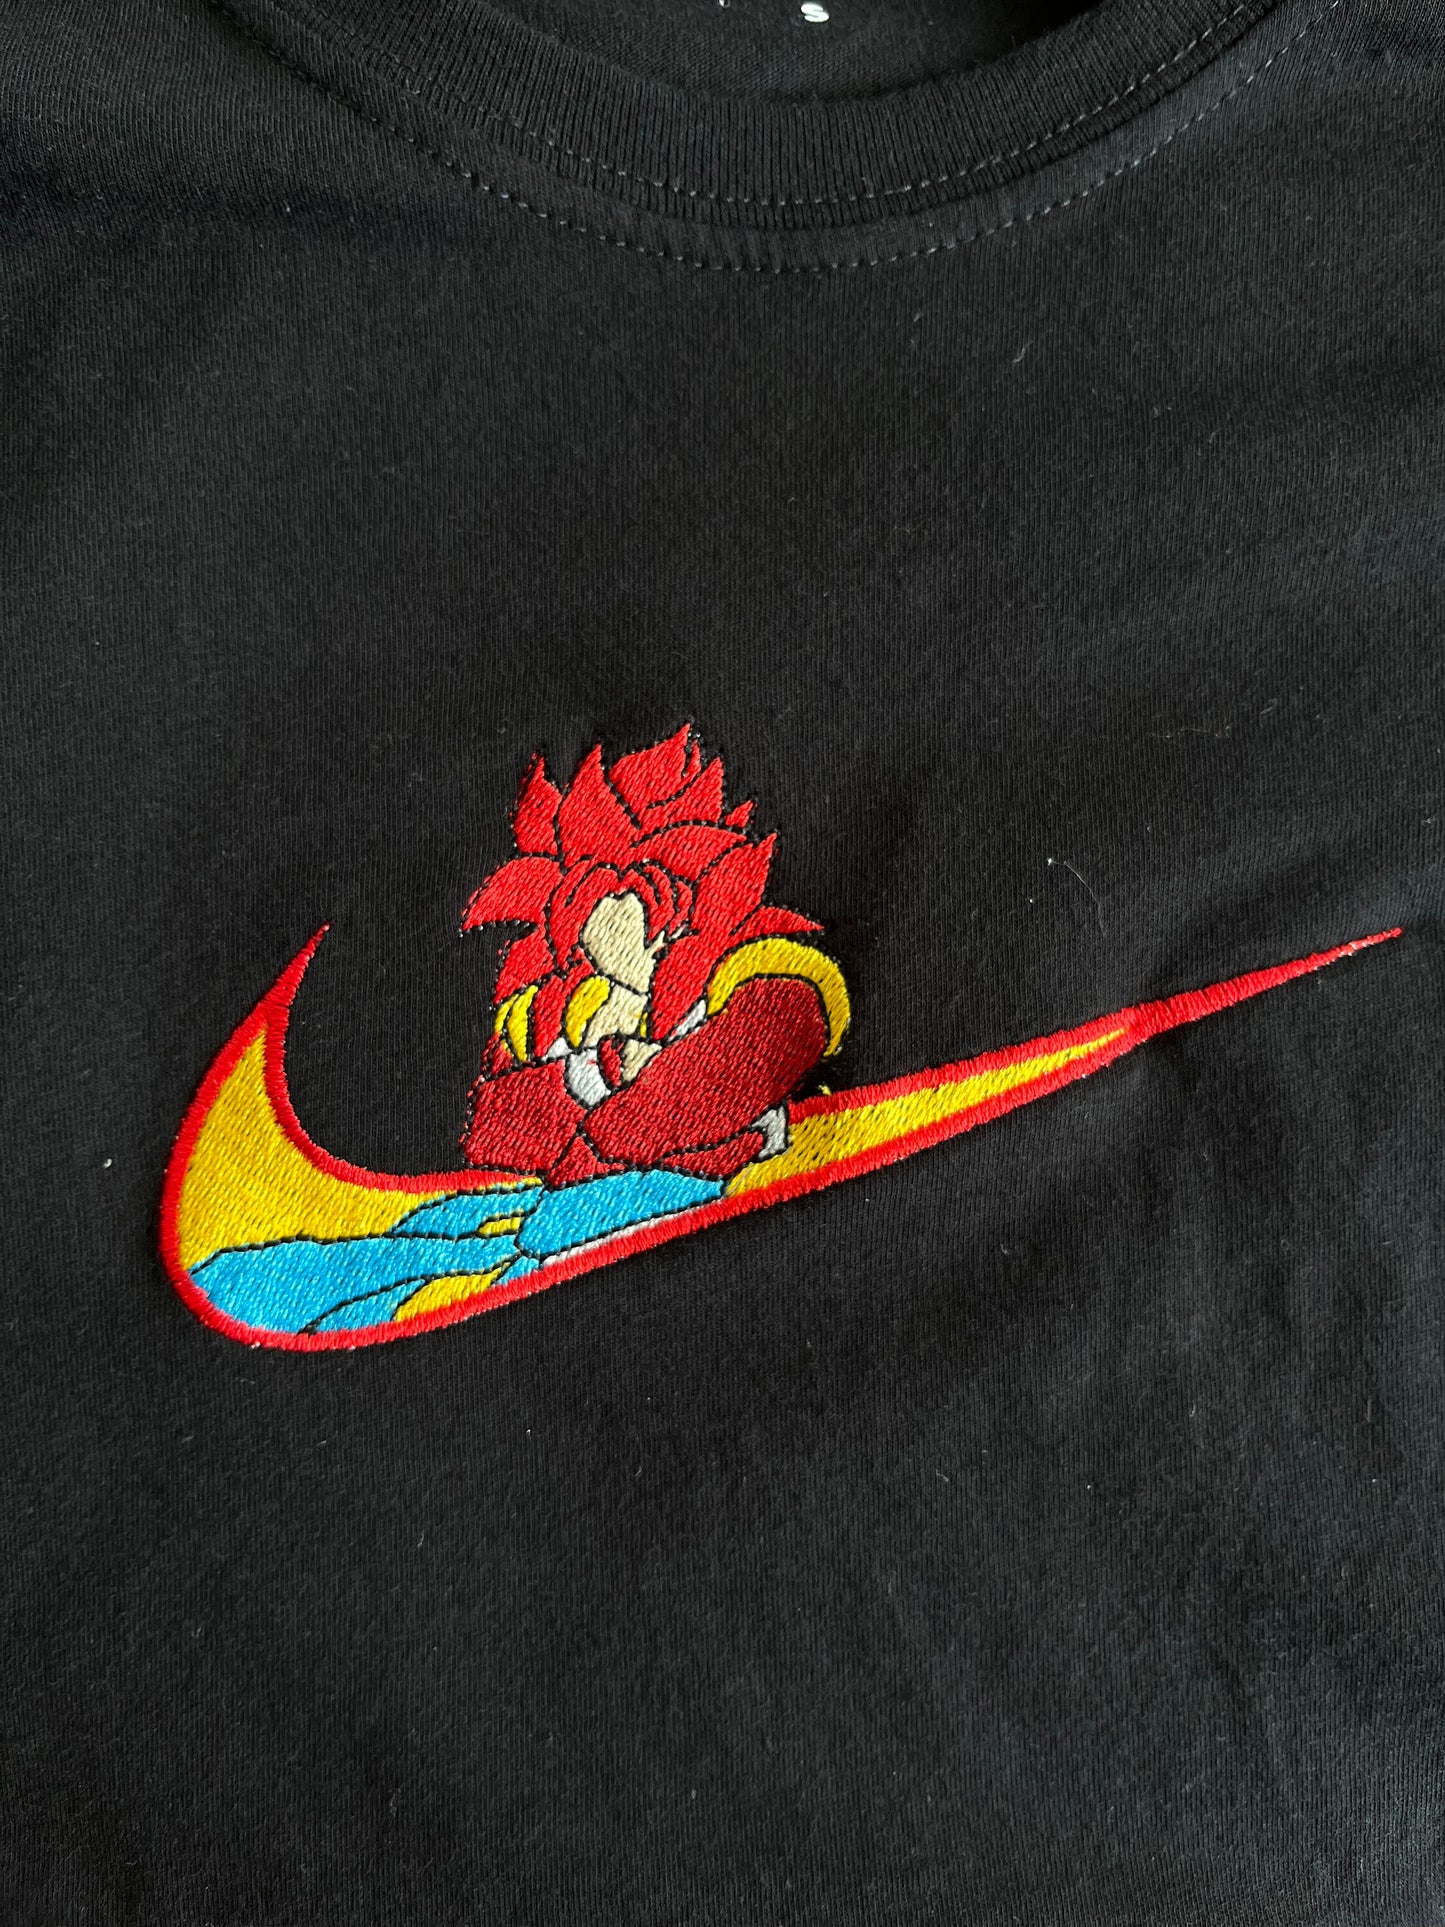 Nike x Gogeta SSJ4 Embroidery (DBZ)